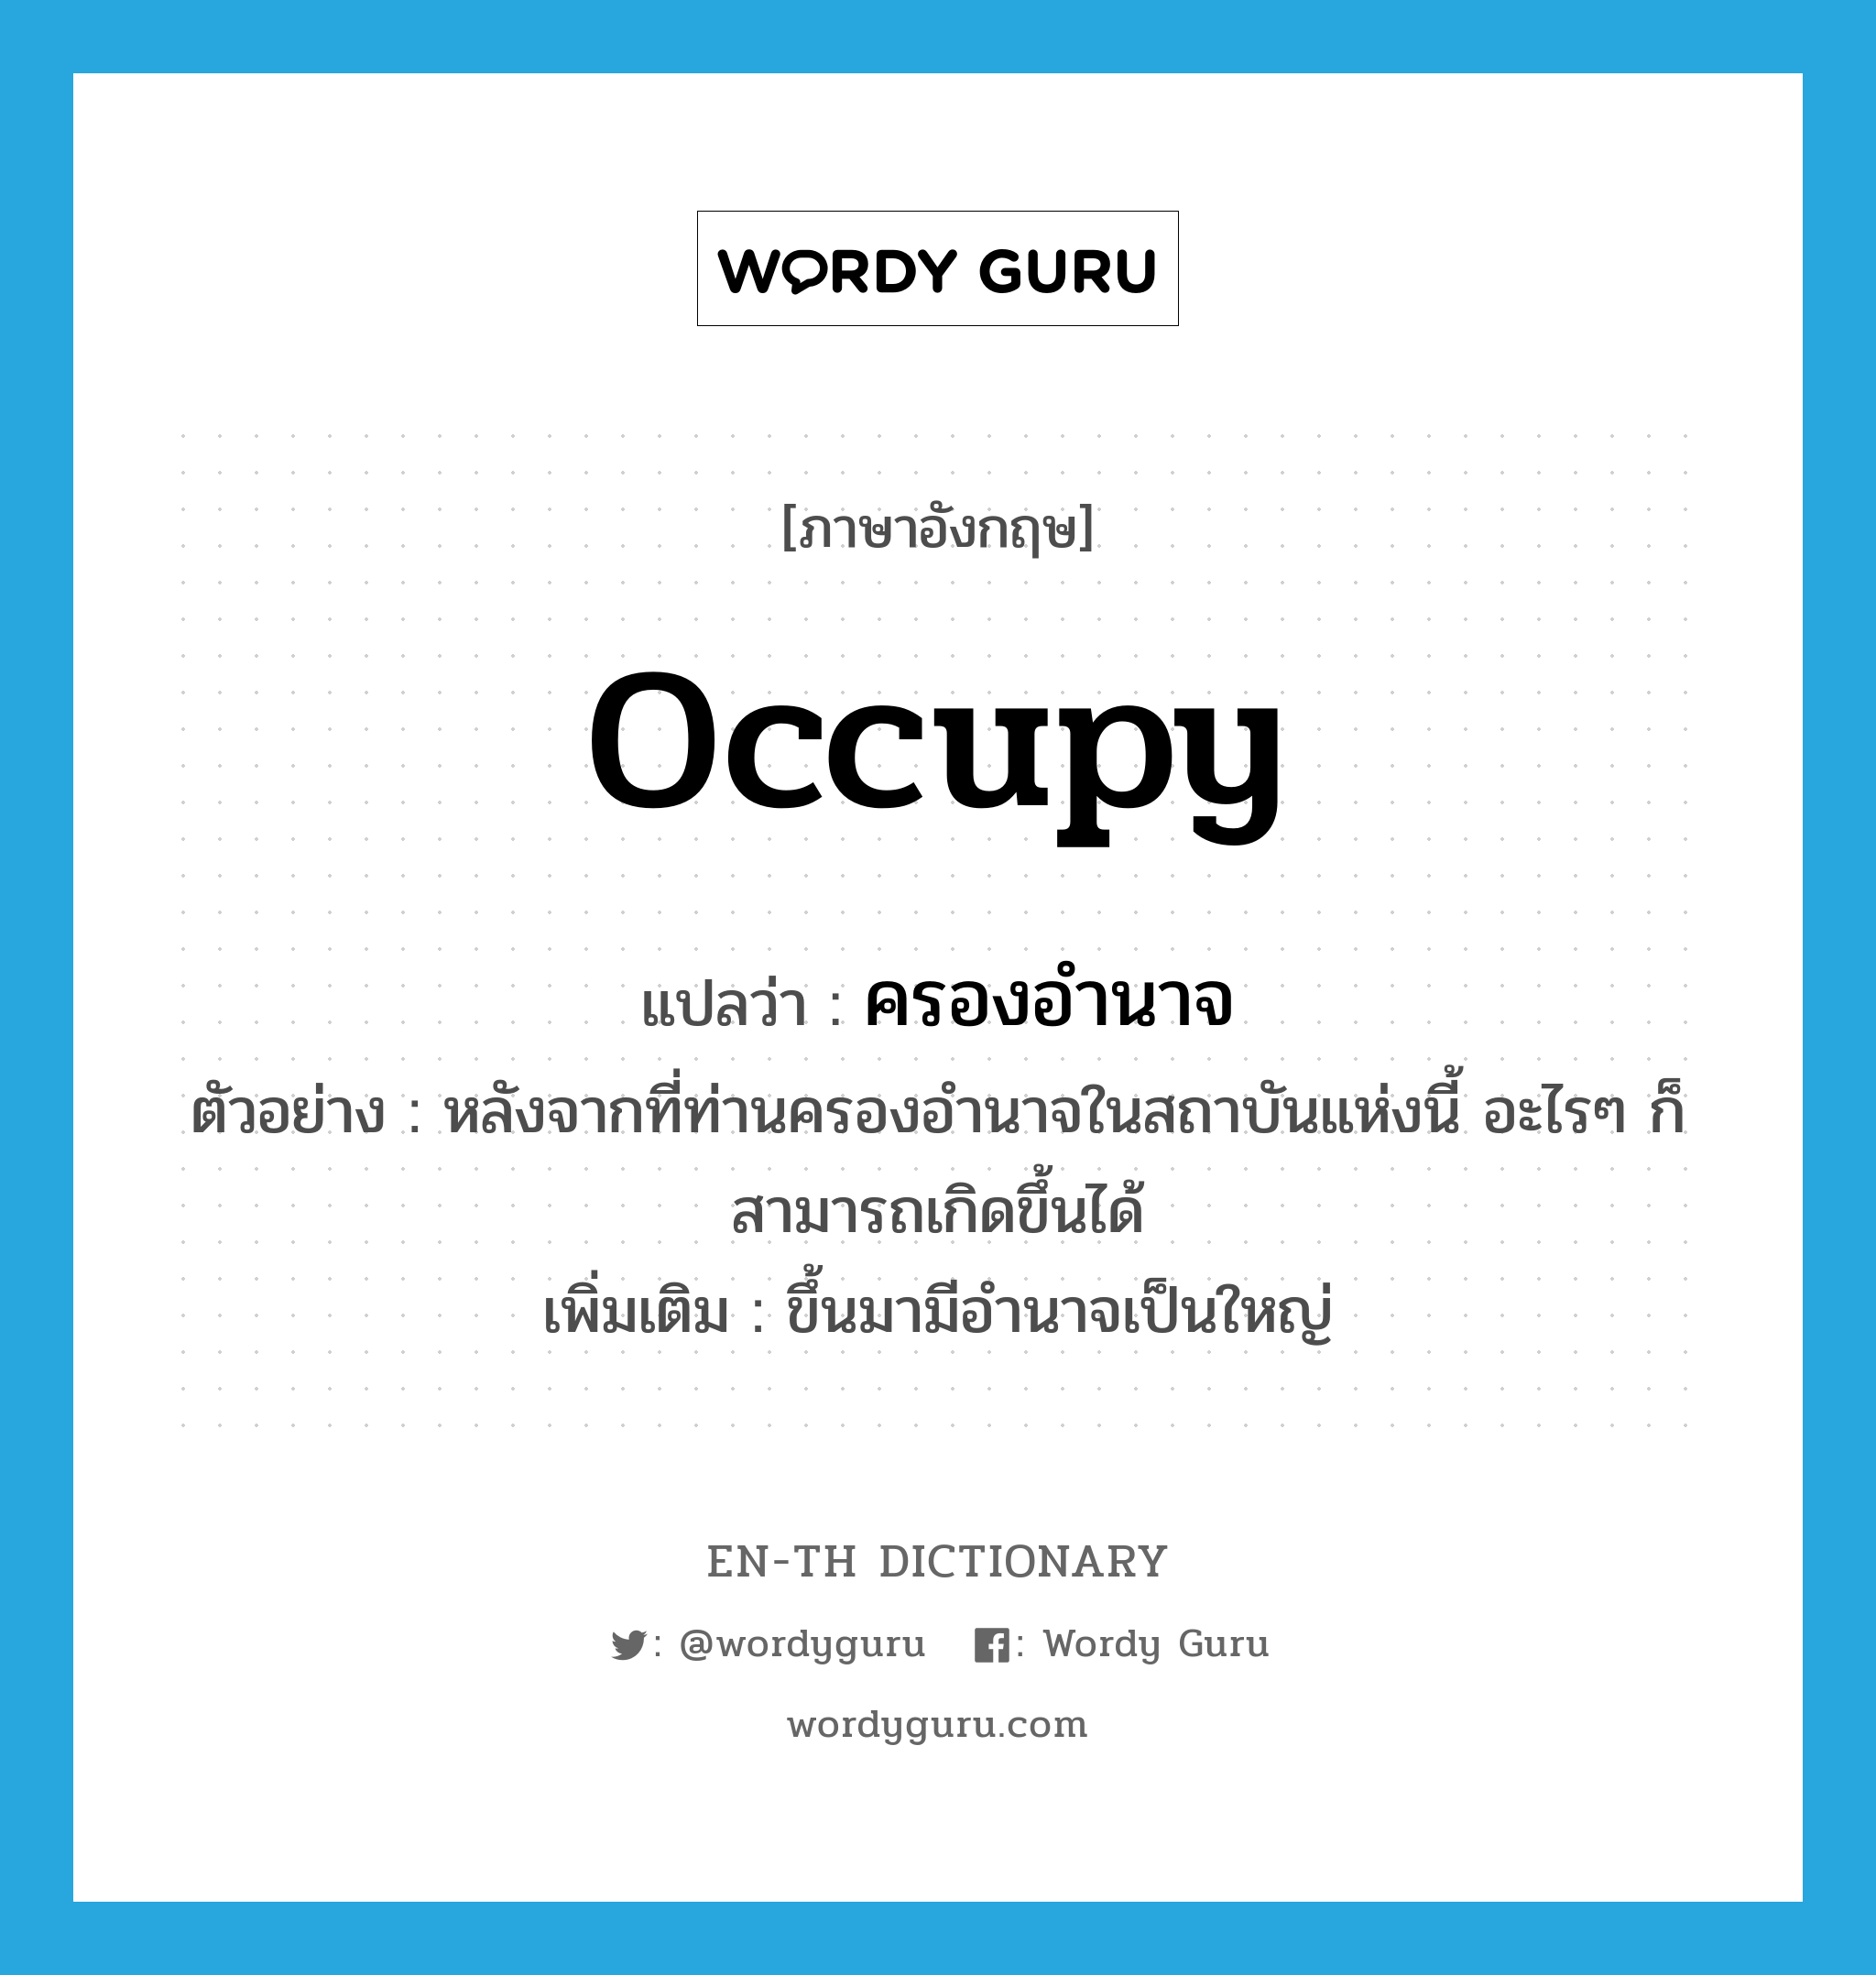 occupy แปลว่า?, คำศัพท์ภาษาอังกฤษ occupy แปลว่า ครองอำนาจ ประเภท V ตัวอย่าง หลังจากที่ท่านครองอำนาจในสถาบันแห่งนี้ อะไรๆ ก็สามารถเกิดขึ้นได้ เพิ่มเติม ขึ้นมามีอำนาจเป็นใหญ่ หมวด V